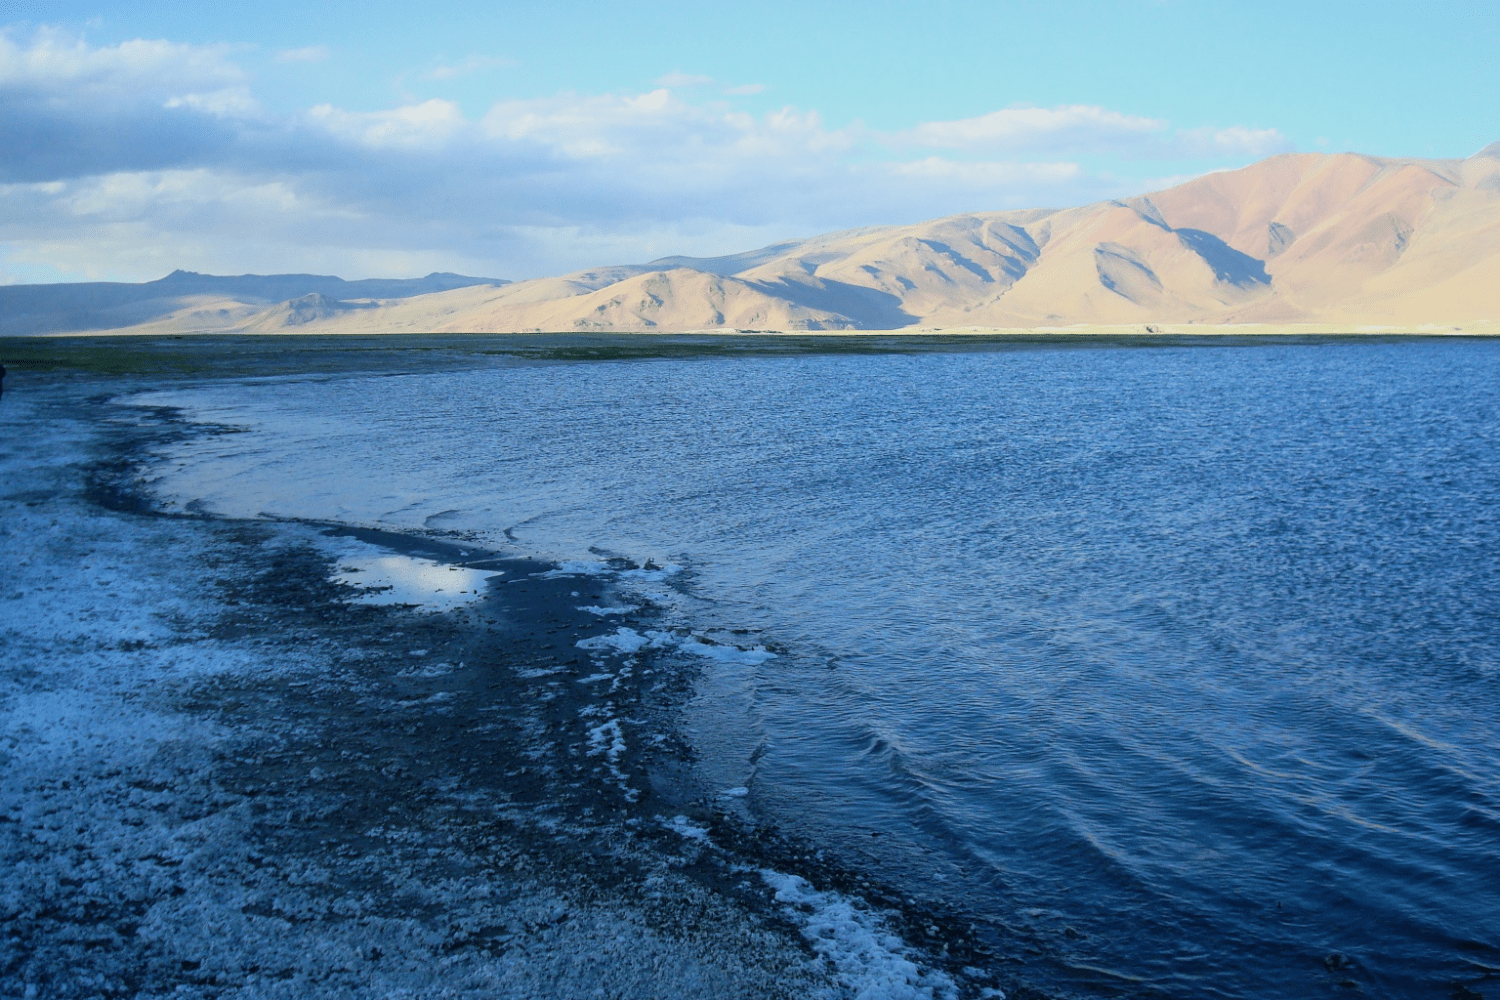 tsokar-lake-in-kashmir